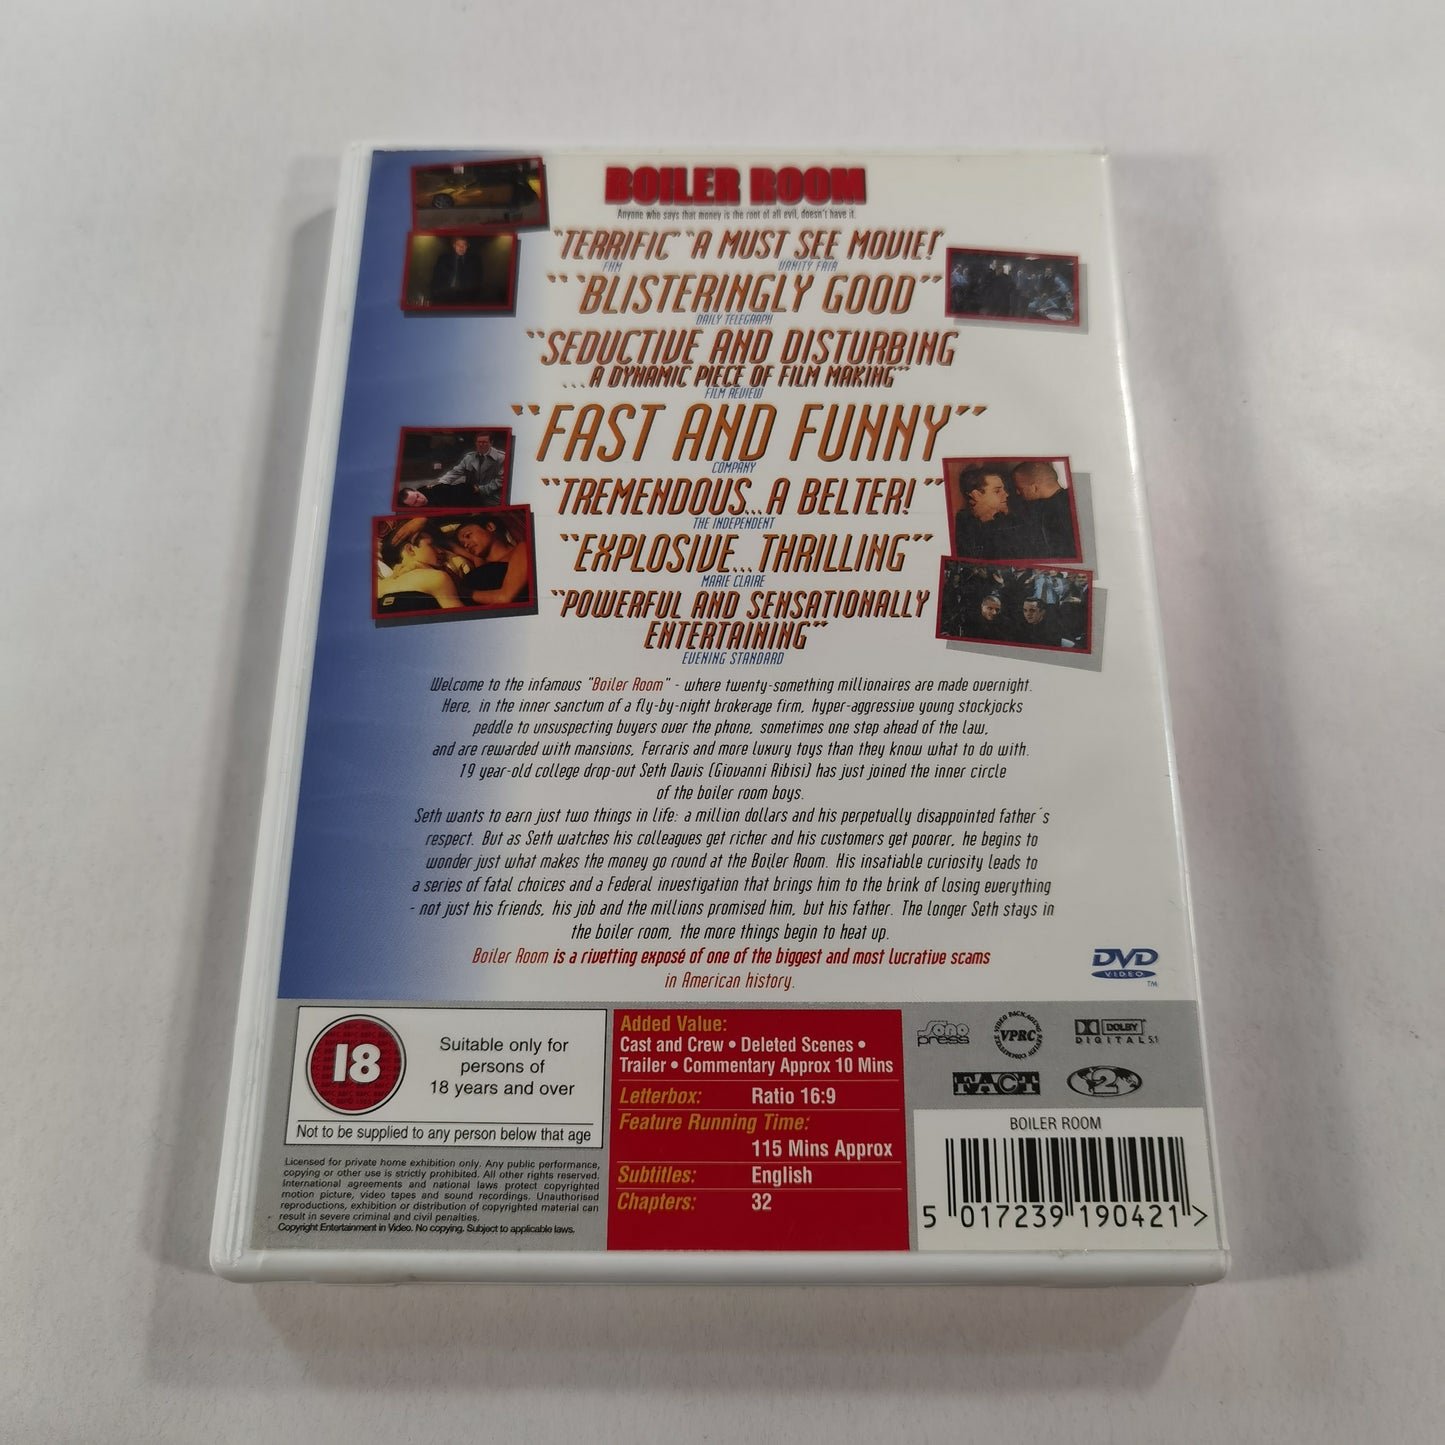 Boiler Room (2000) - DVD UK